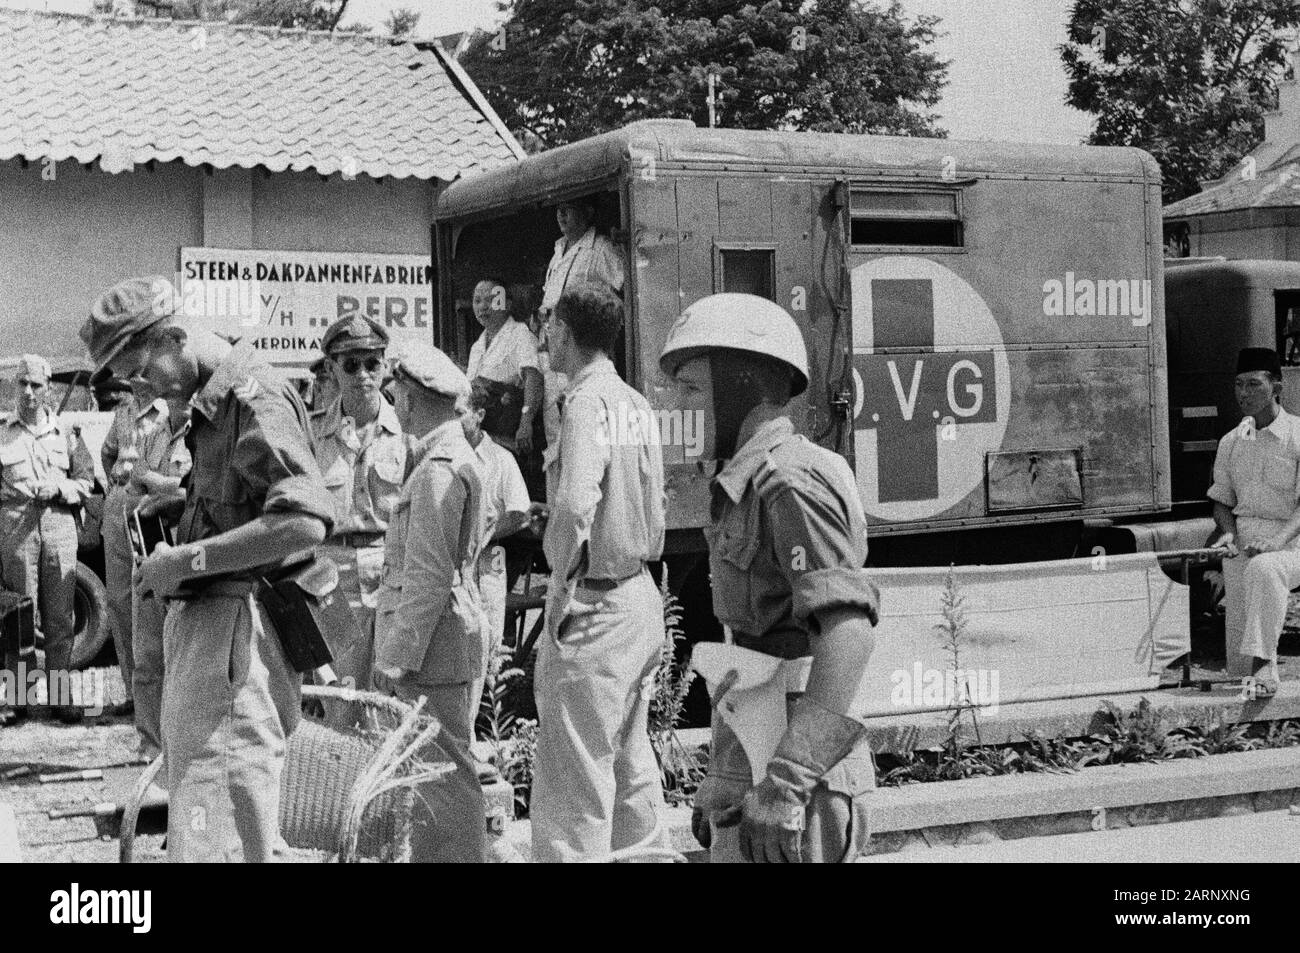 Un'ambulanza con croce rossa e scritta O.V.G. si trova in una fabbrica di piastrelle di pietra e tetto (v/h... Pere?) Data: Dicembre 1948 Luogo: Indonesia, Indie Orientali Olandesi Foto Stock